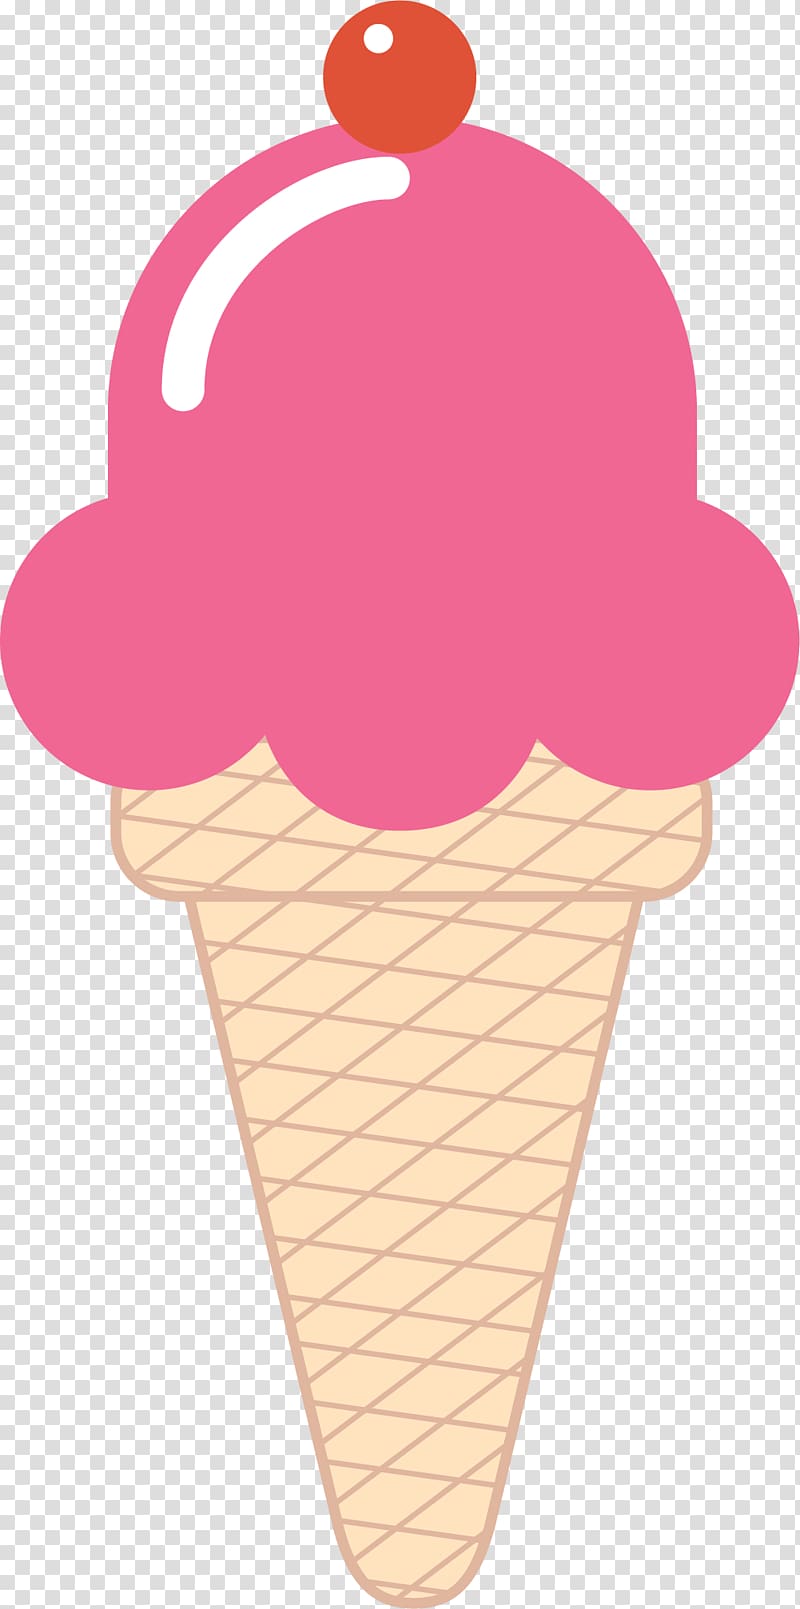 Neapolitan ice cream Ice cream cone Gelato Chocolate ice cream, Cartoon pink ice cream transparent background PNG clipart